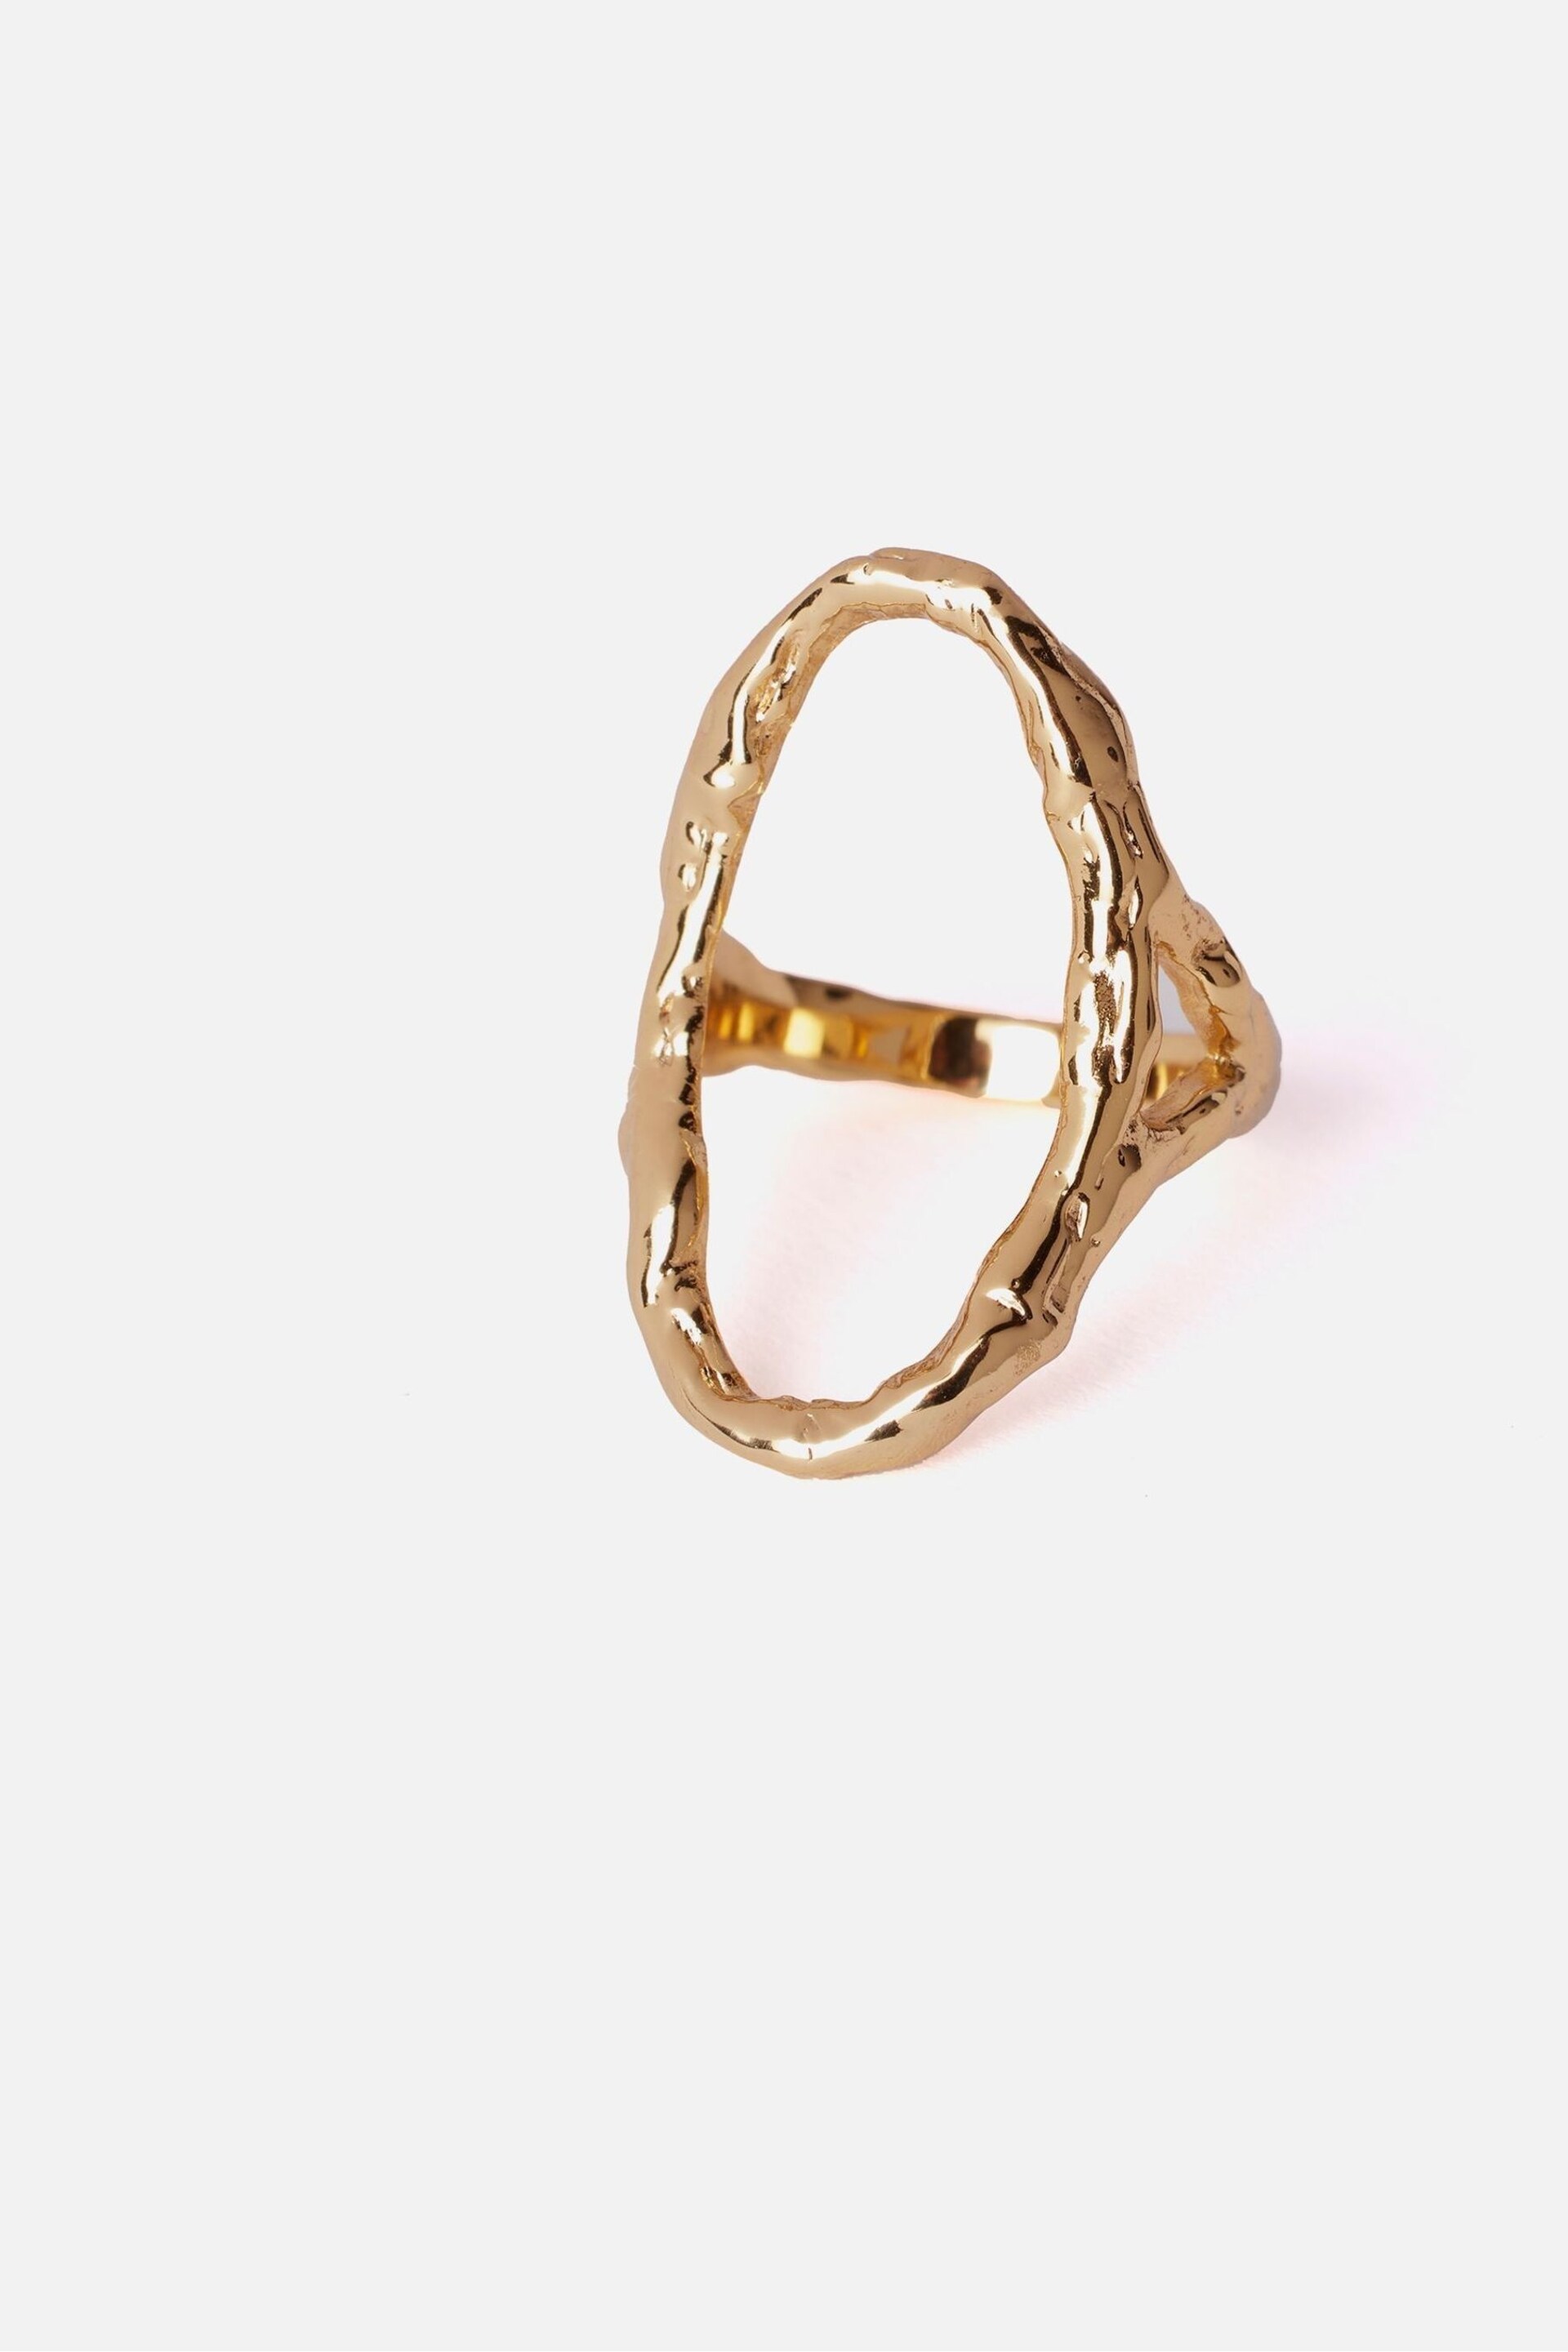 Mint Velvet Gold Tone Open Oval Ring - Image 2 of 3